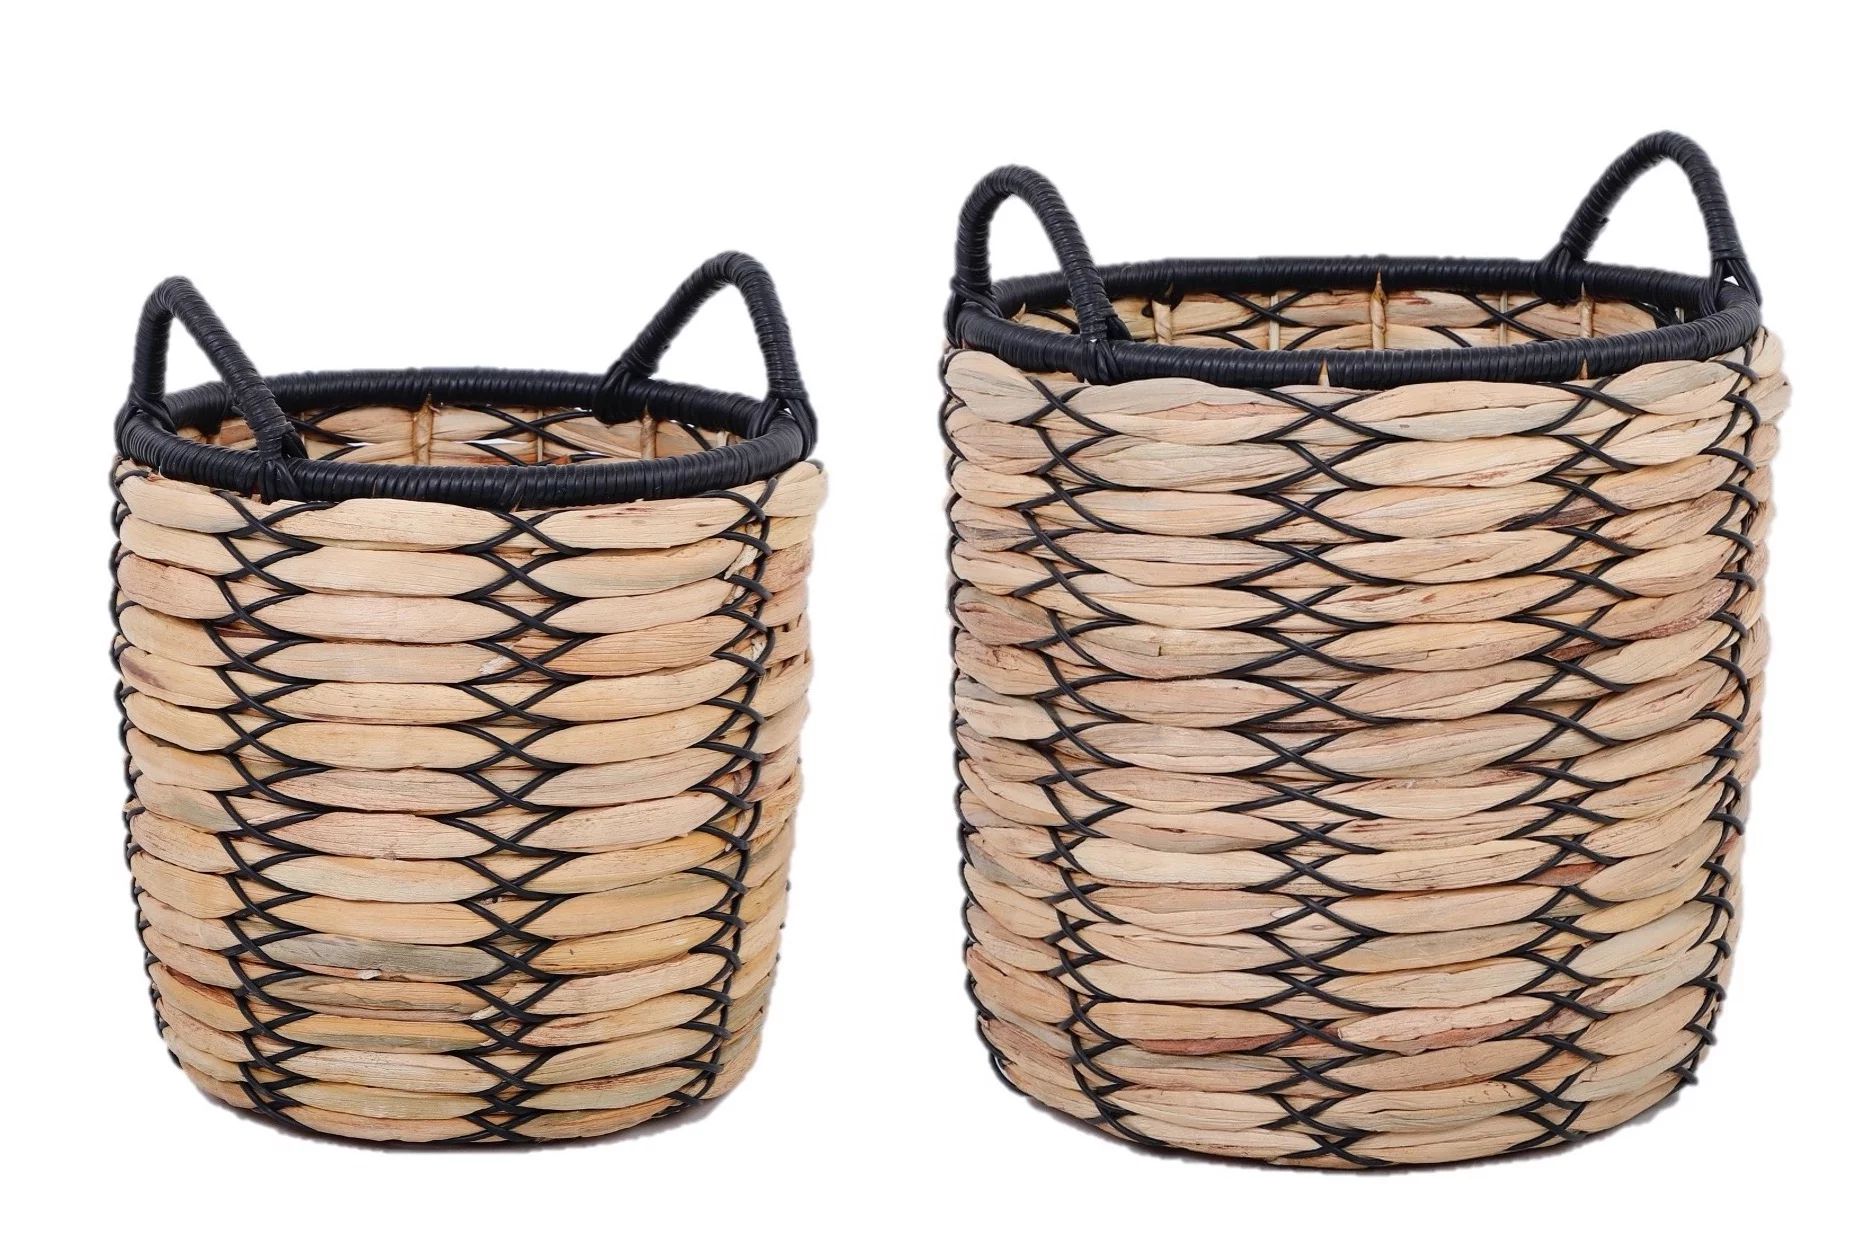 Better Homes & Gardens Claren 12" & 15" Round Water Hyacinth Basket Planter Set | Walmart (US)